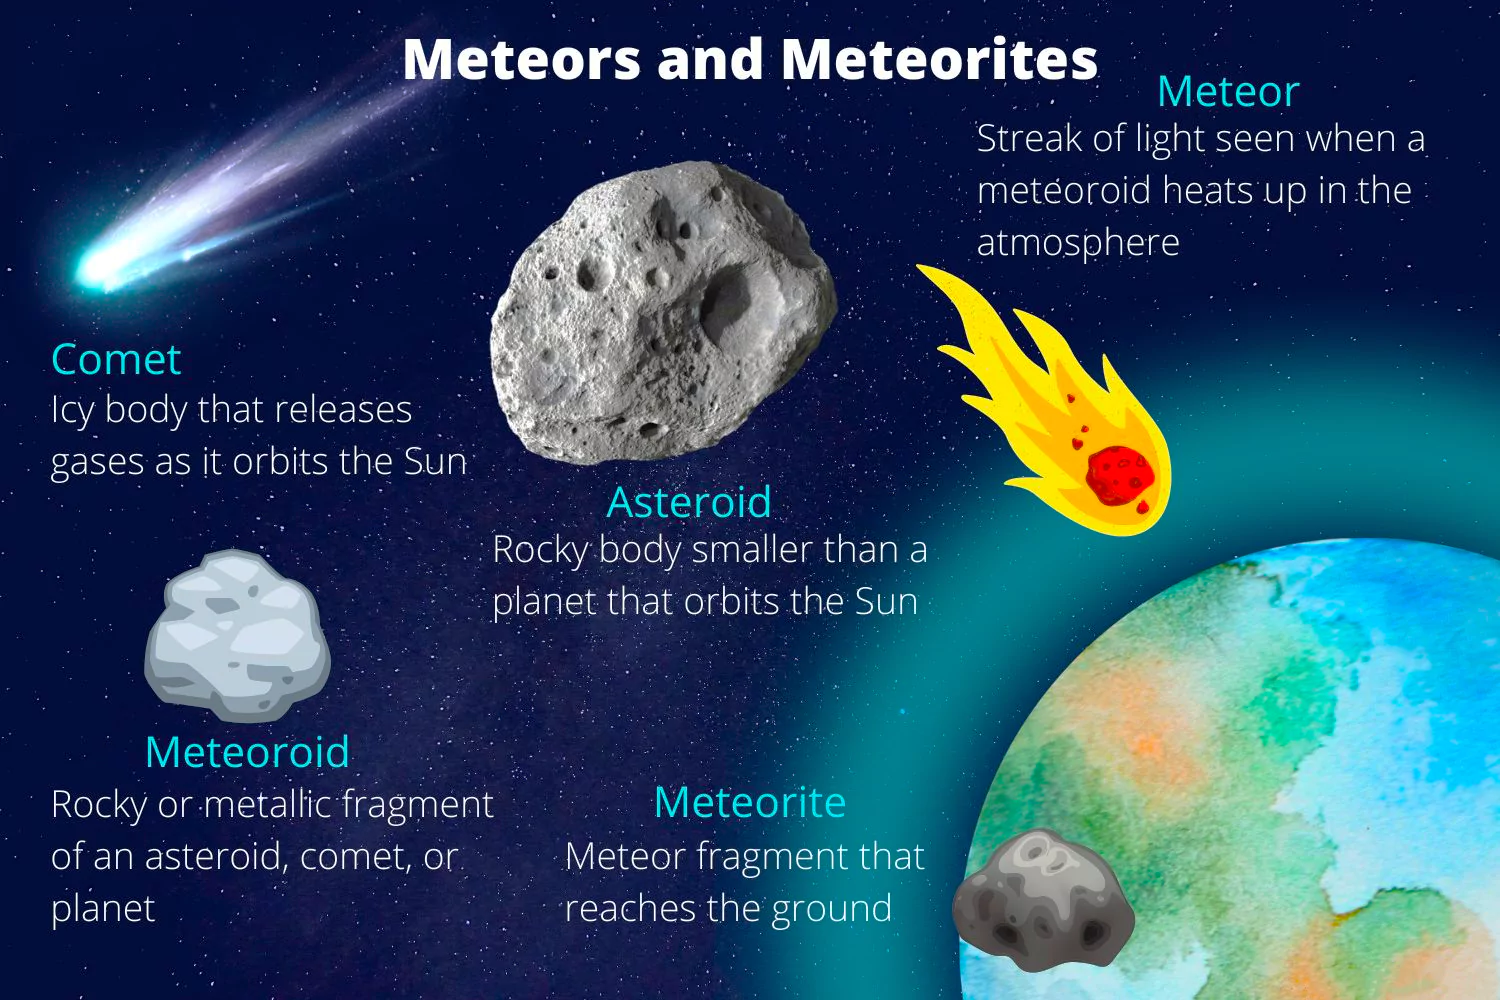 Eta Aquariid Meteor Shower